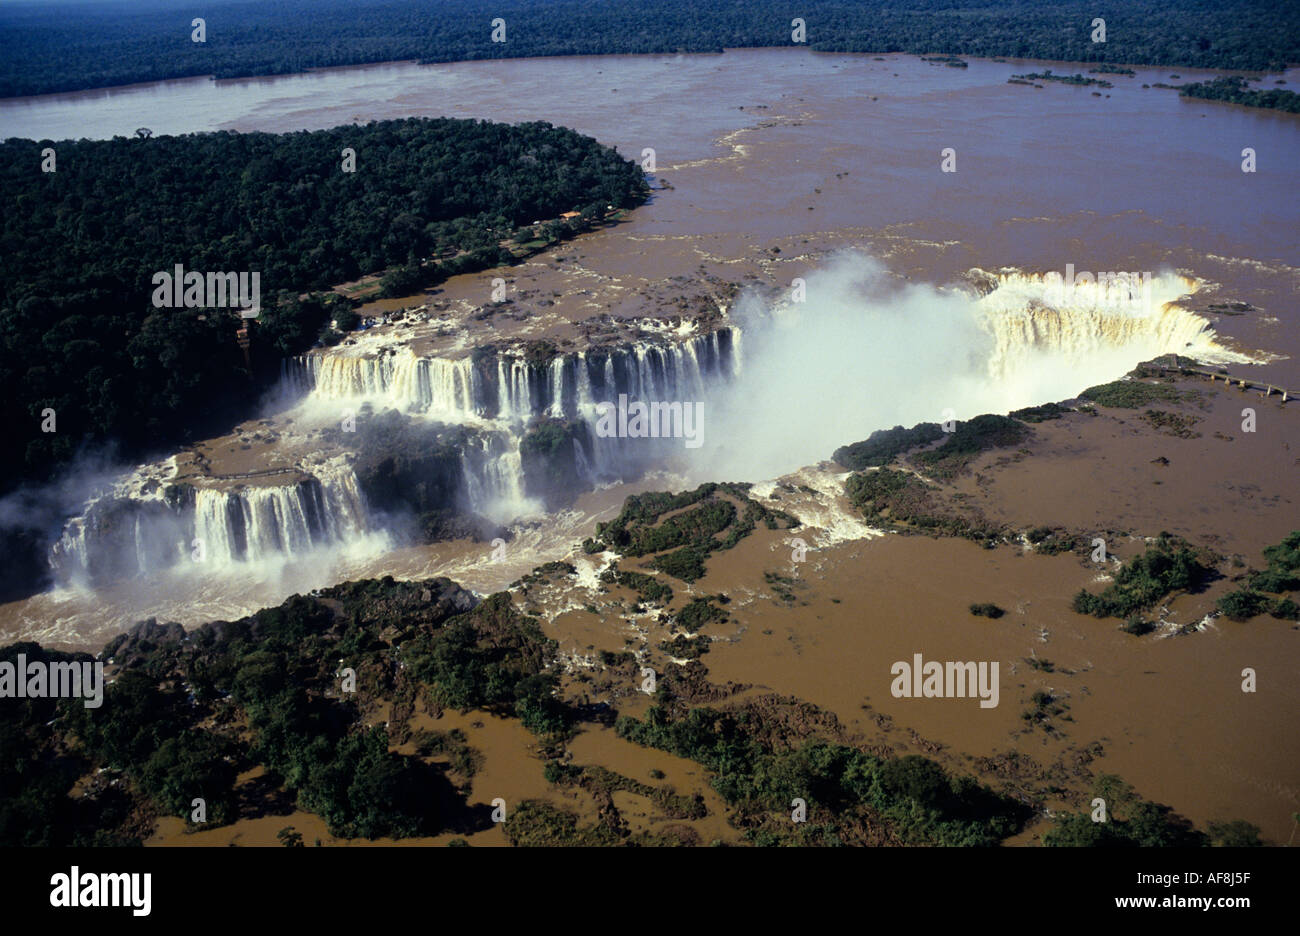 Vue aérienne classique par-dessus la rivière Iguaçu chutes d'Iguaçu et paysage de forêt tropicale à la frontière du Brésil et l'Argentine Banque D'Images